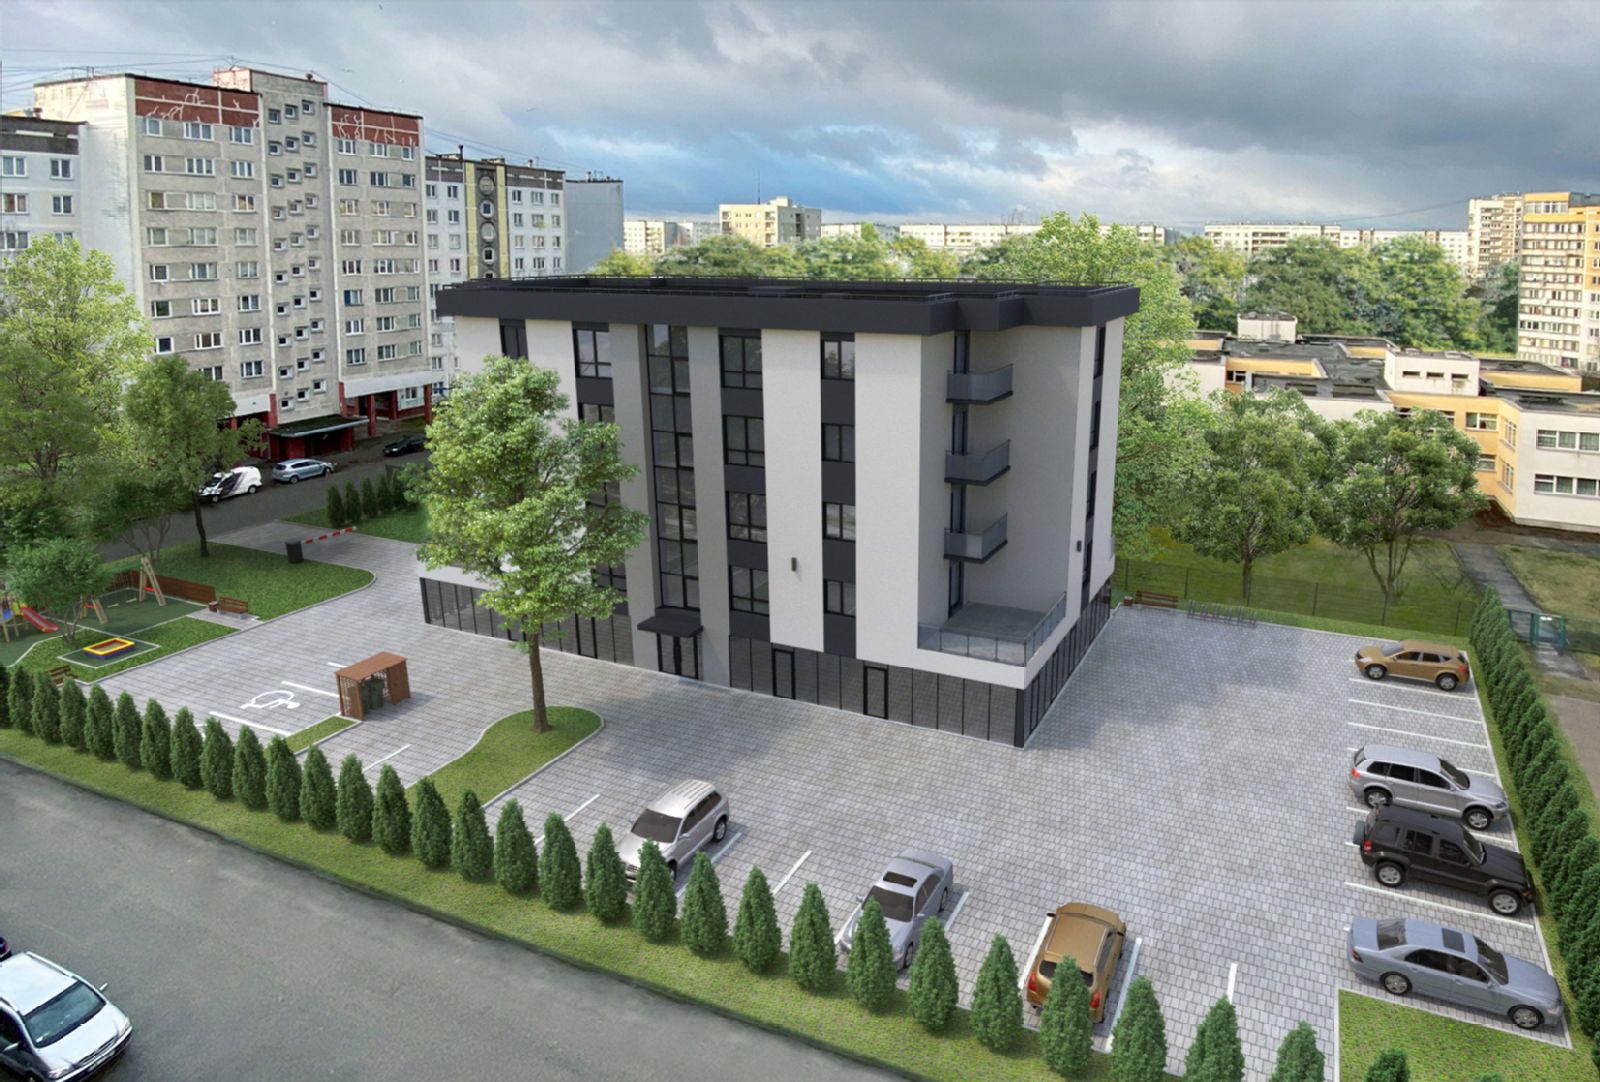 Turpinās dzīvokļu rezervēšana jaunajā projektā Pļavniekos – Tīnūžu 1A - Nekustamo īpašumu ziņas - City24.lv nekustamo īpašumu sludinājumu portāls